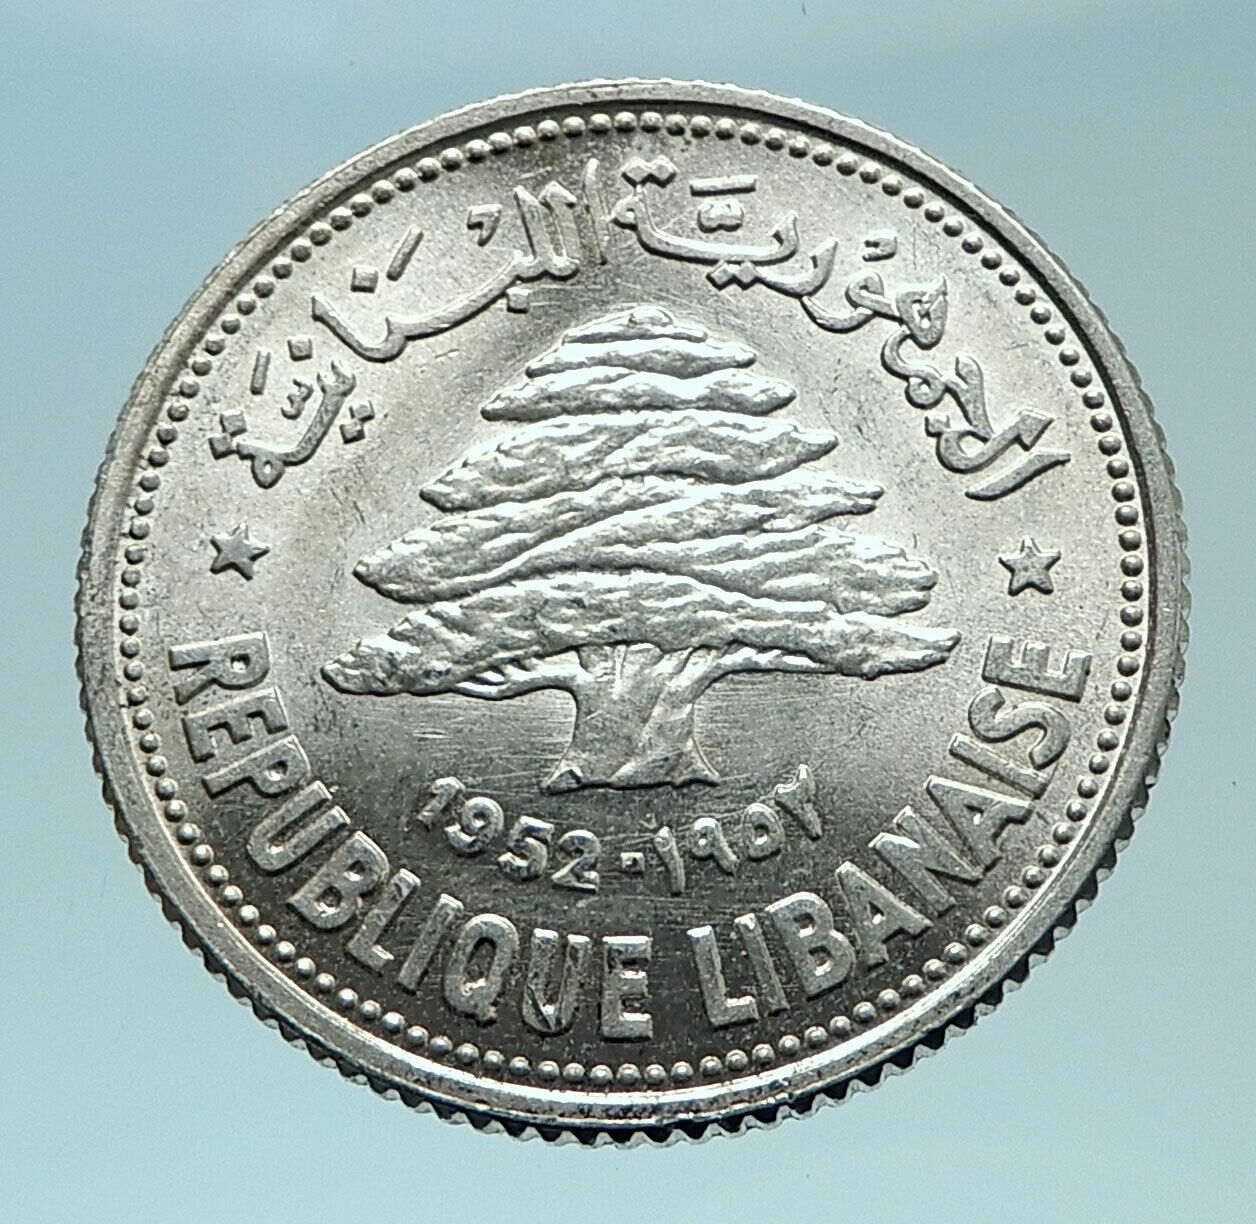 1952 LEBANON Cedar Tree Wreath Antique Genuine Silver 50 Piastres Coin i78590